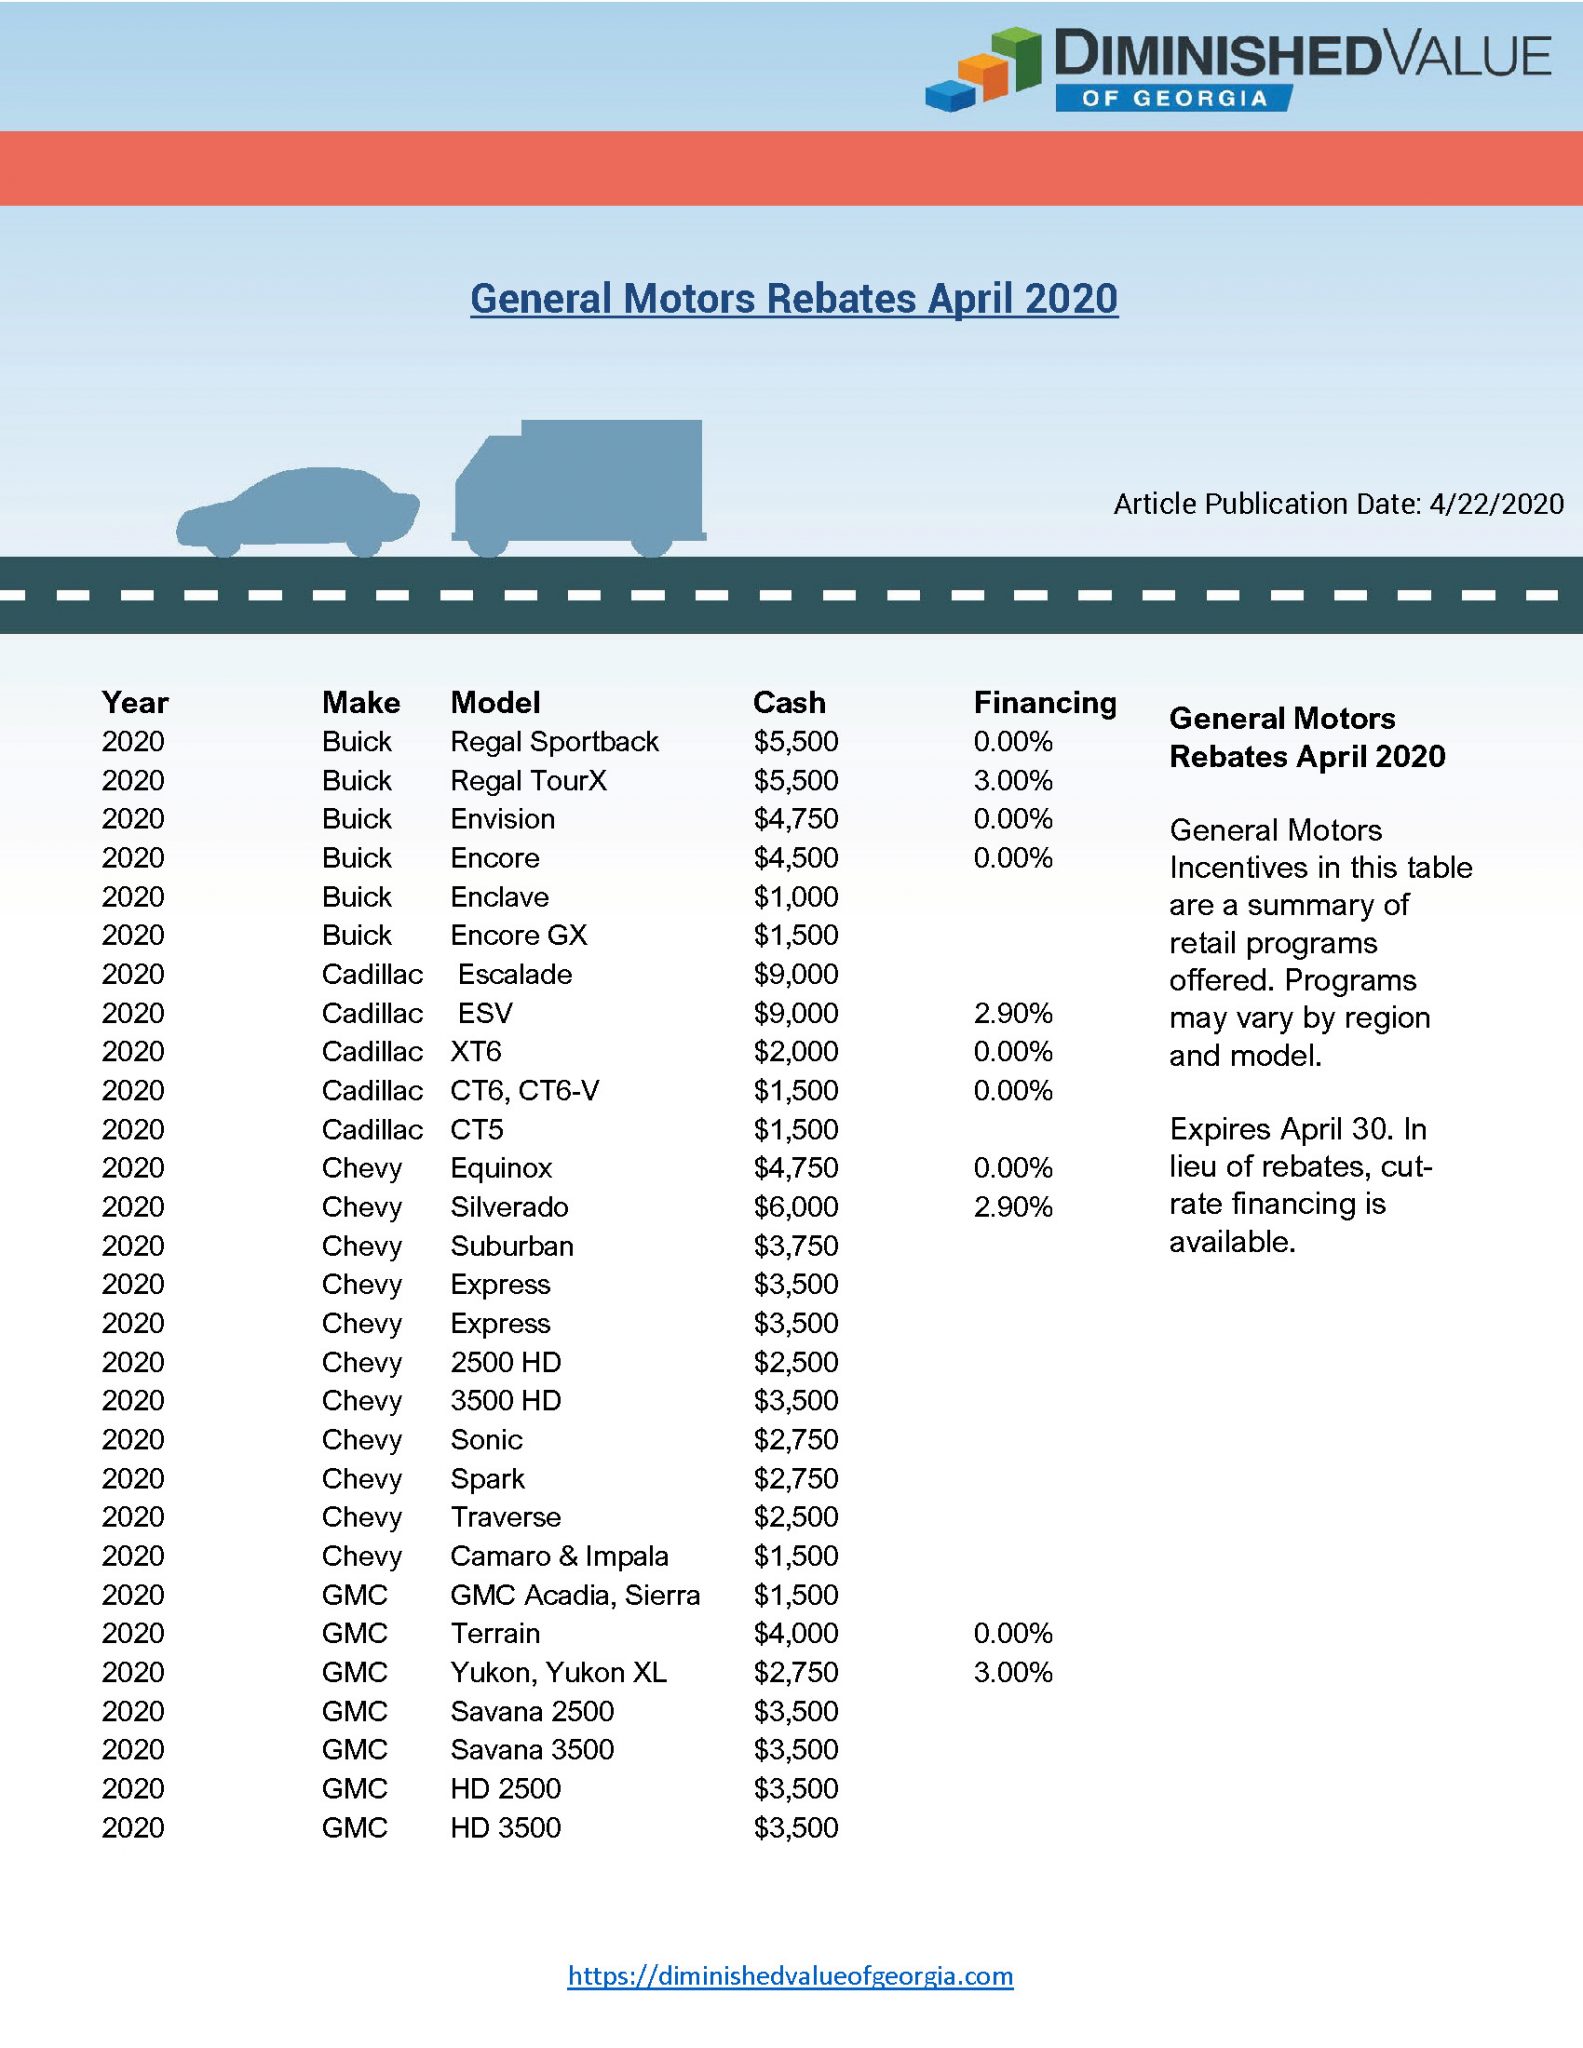 general-motors-rebates-april-2020-diminished-value-of-georgia